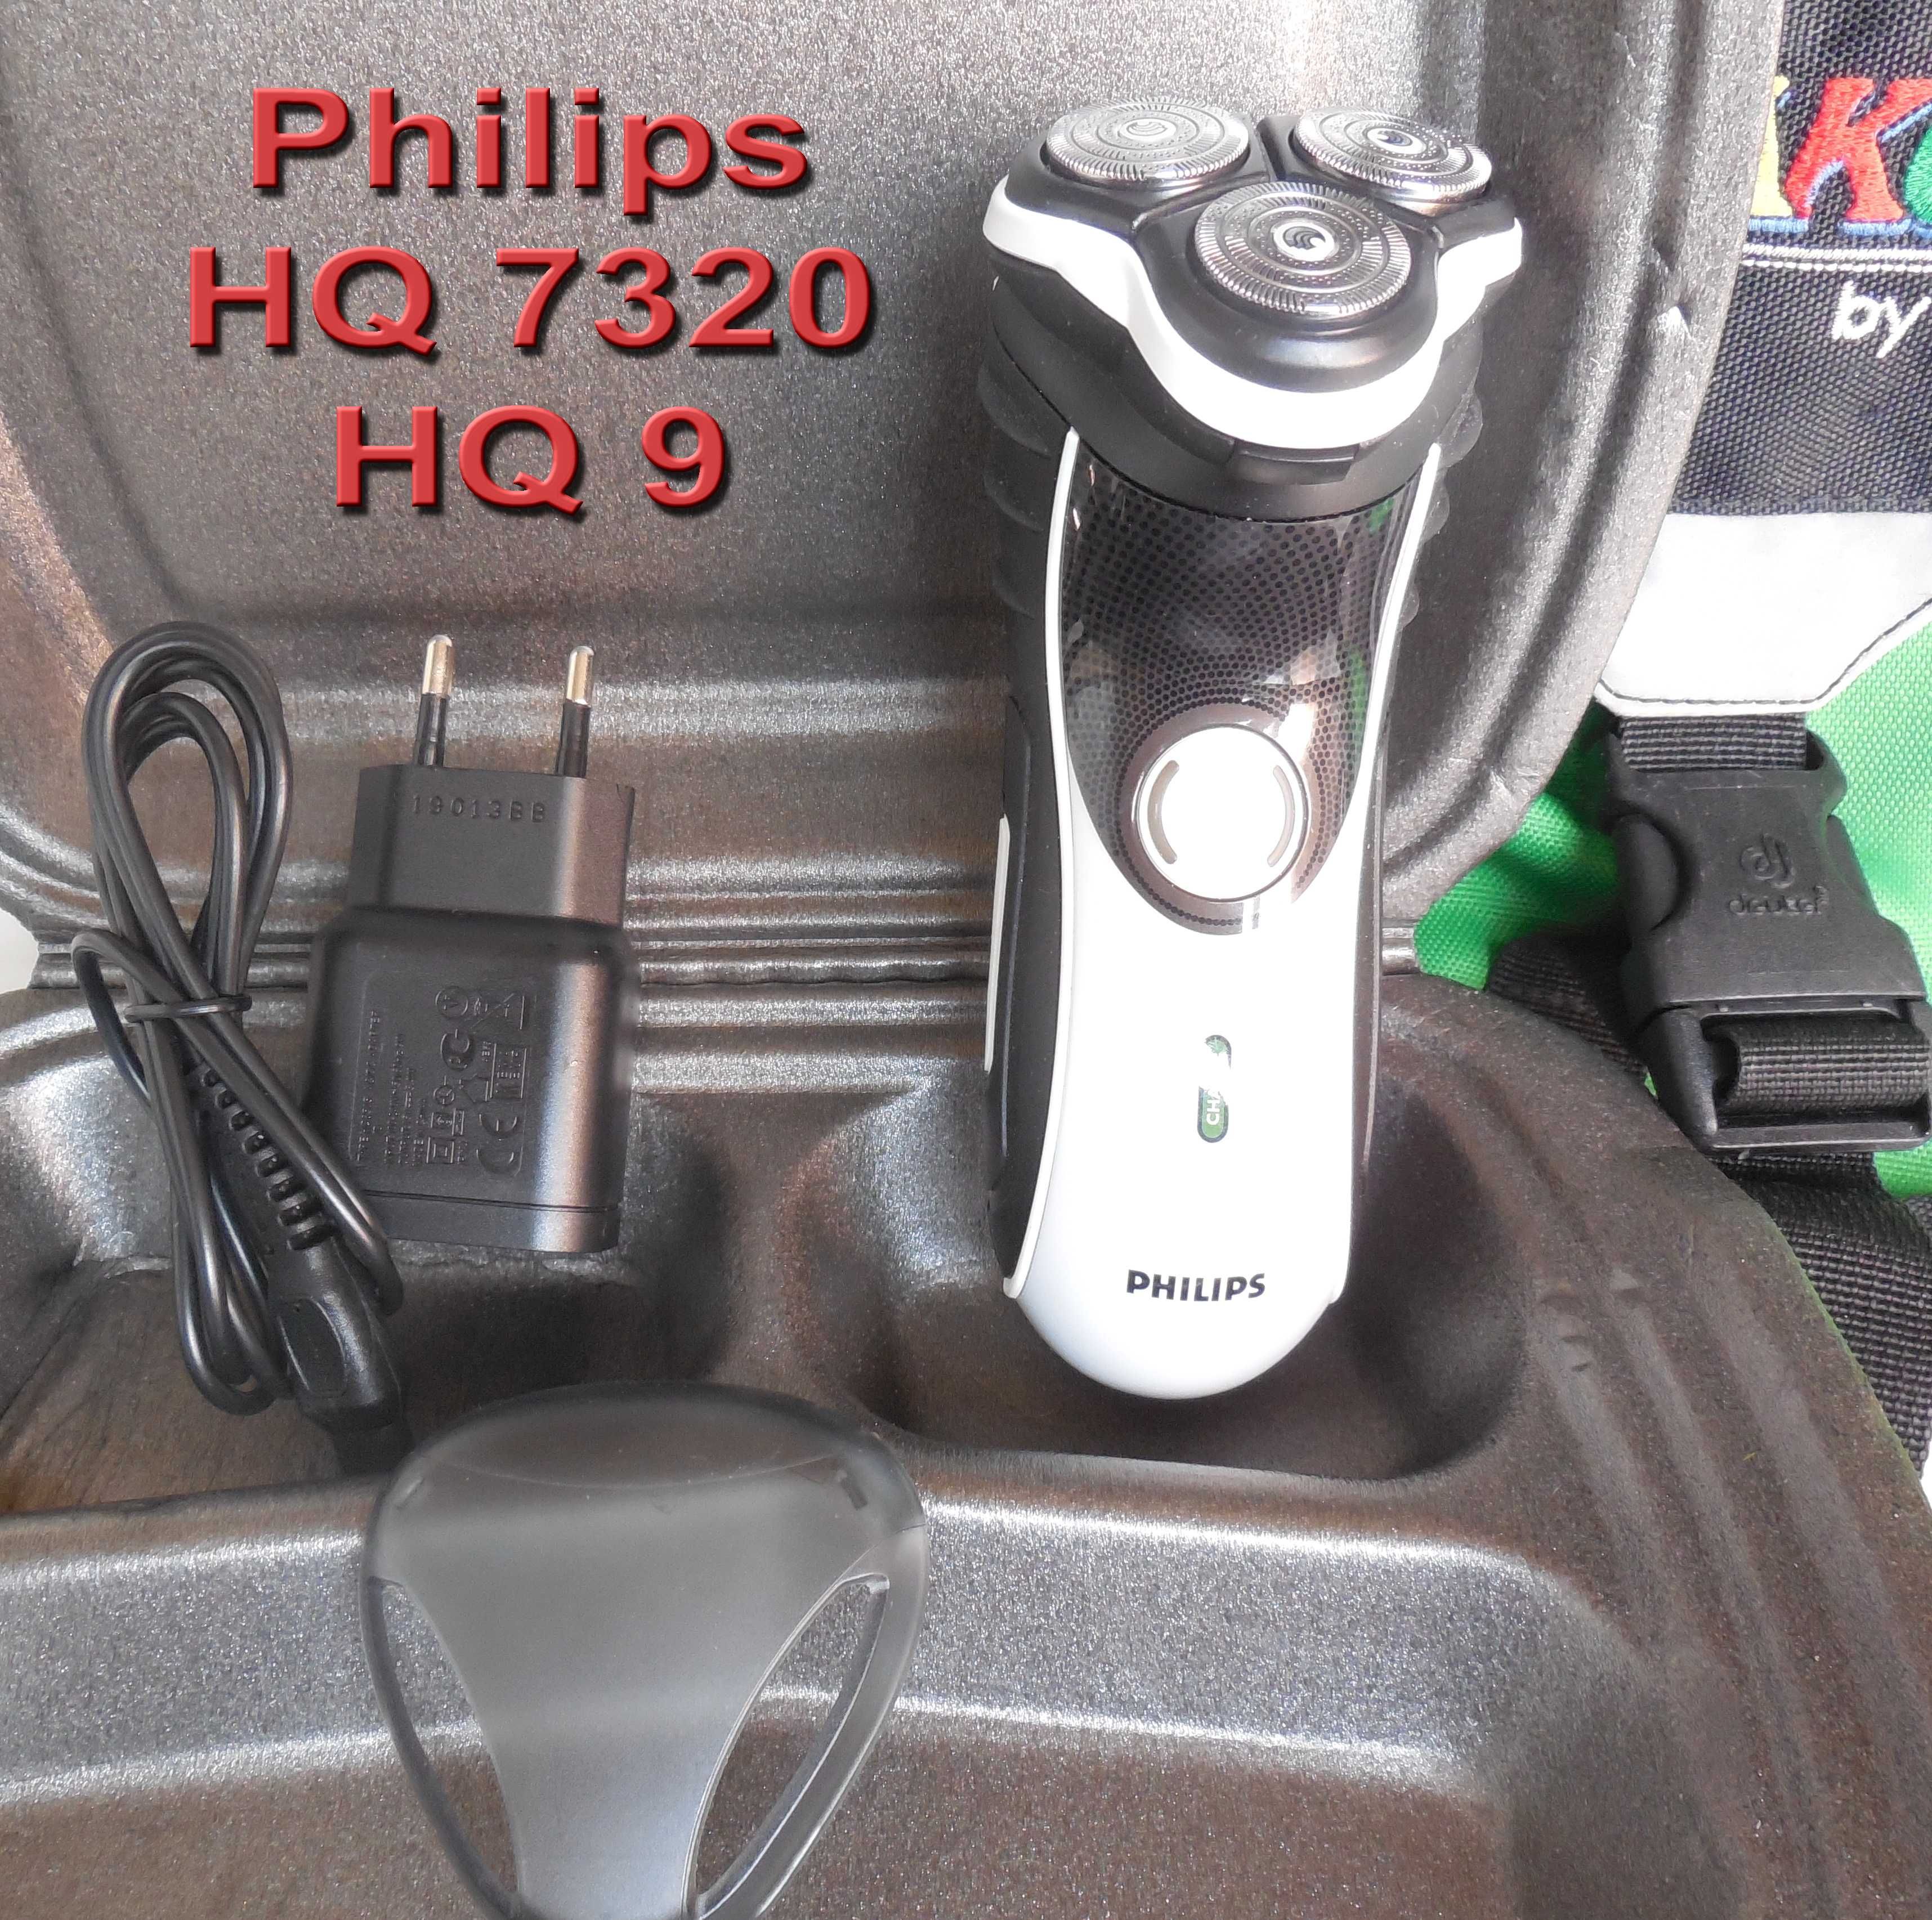 Philips HQ 7320 c новыми лезвиями HQ 9 + подарок + USB шнур  !!!